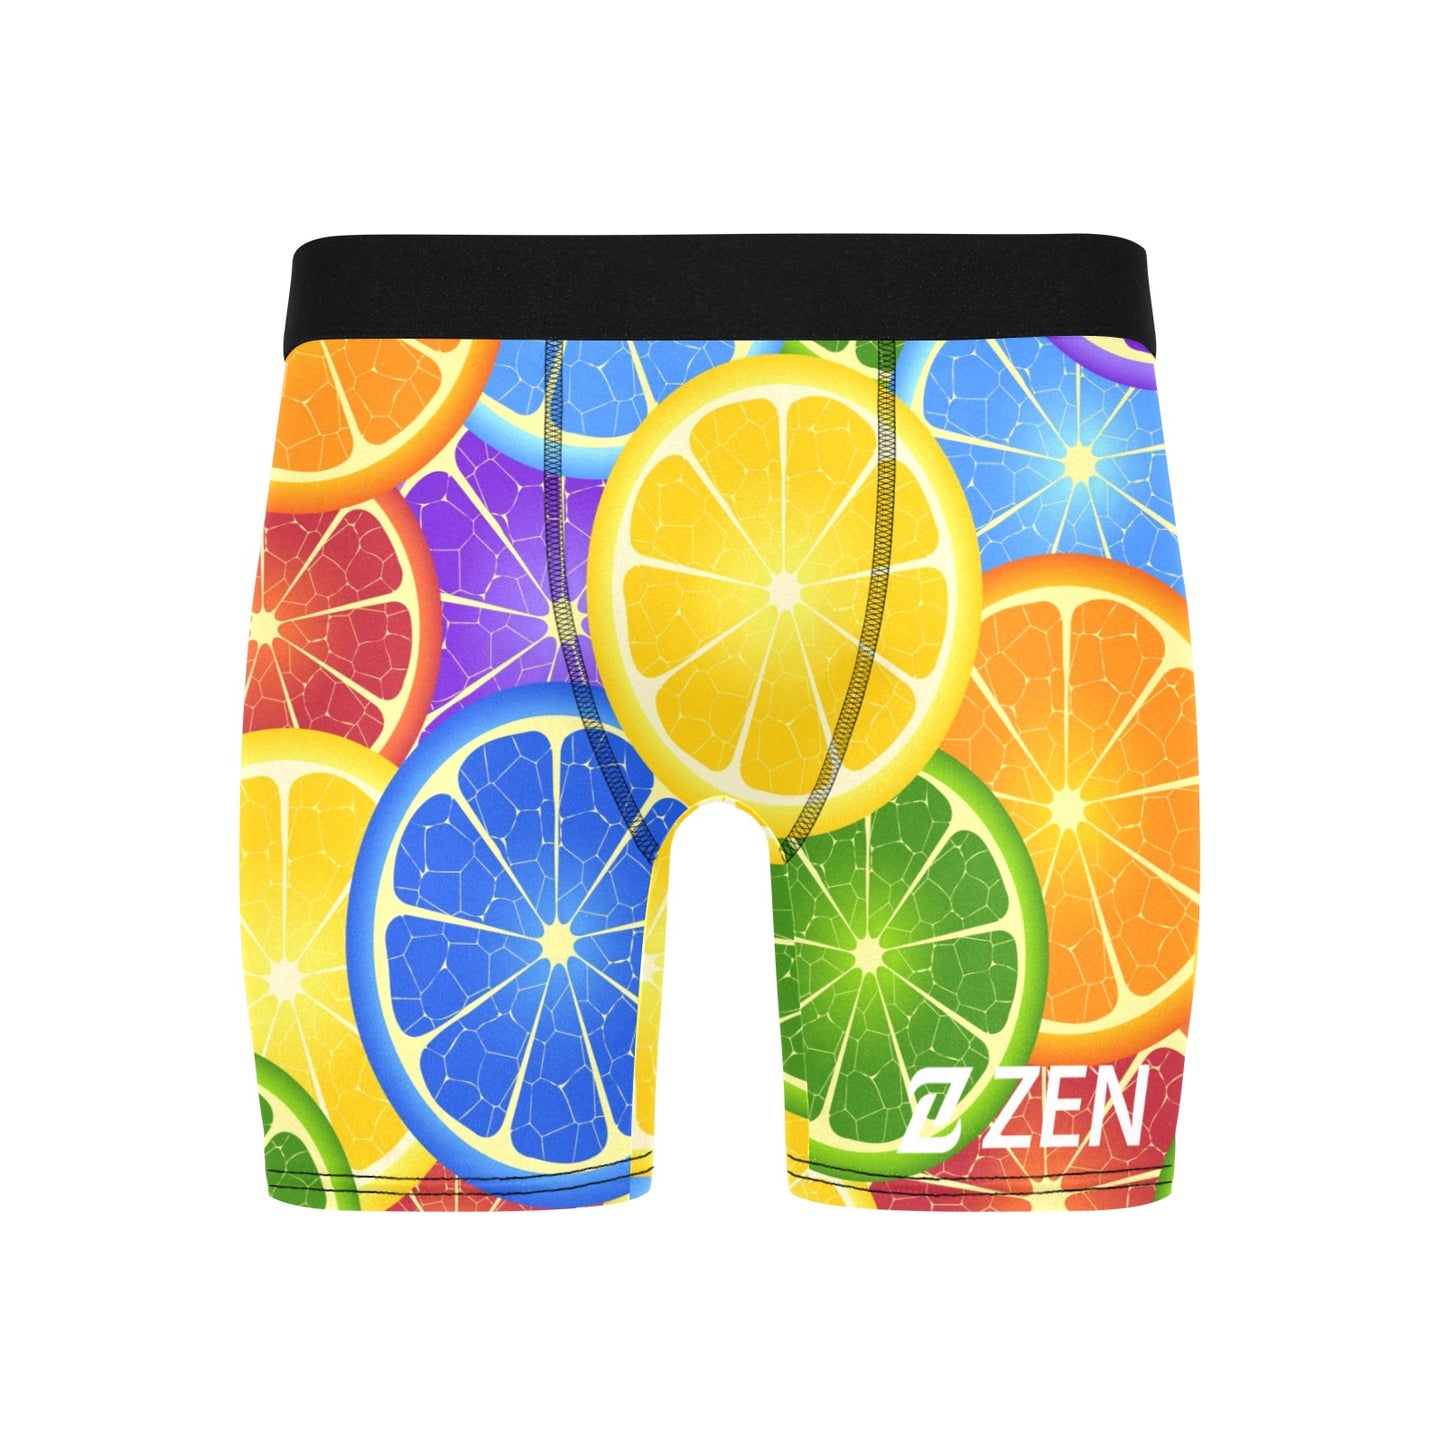 Zen Boxers Long -Citrus